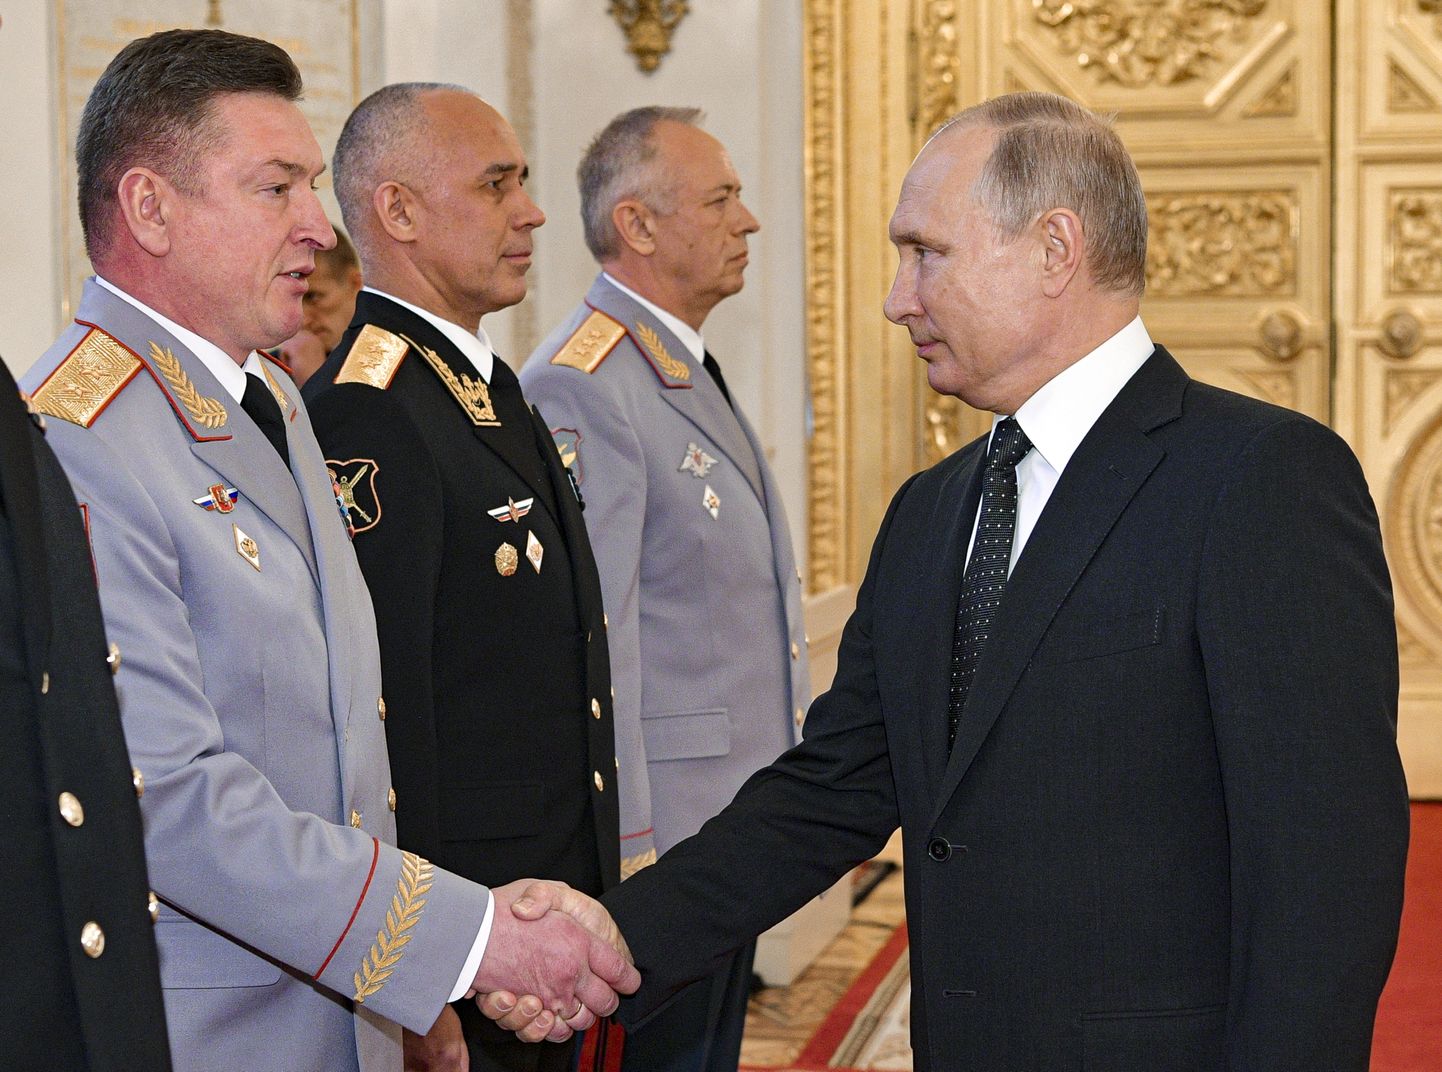 Putin surub kindral Aleksandr Lapini kätt 31. mail 2018. Lapinist sai äsja Venemaa maavägede peastaabi ülem.